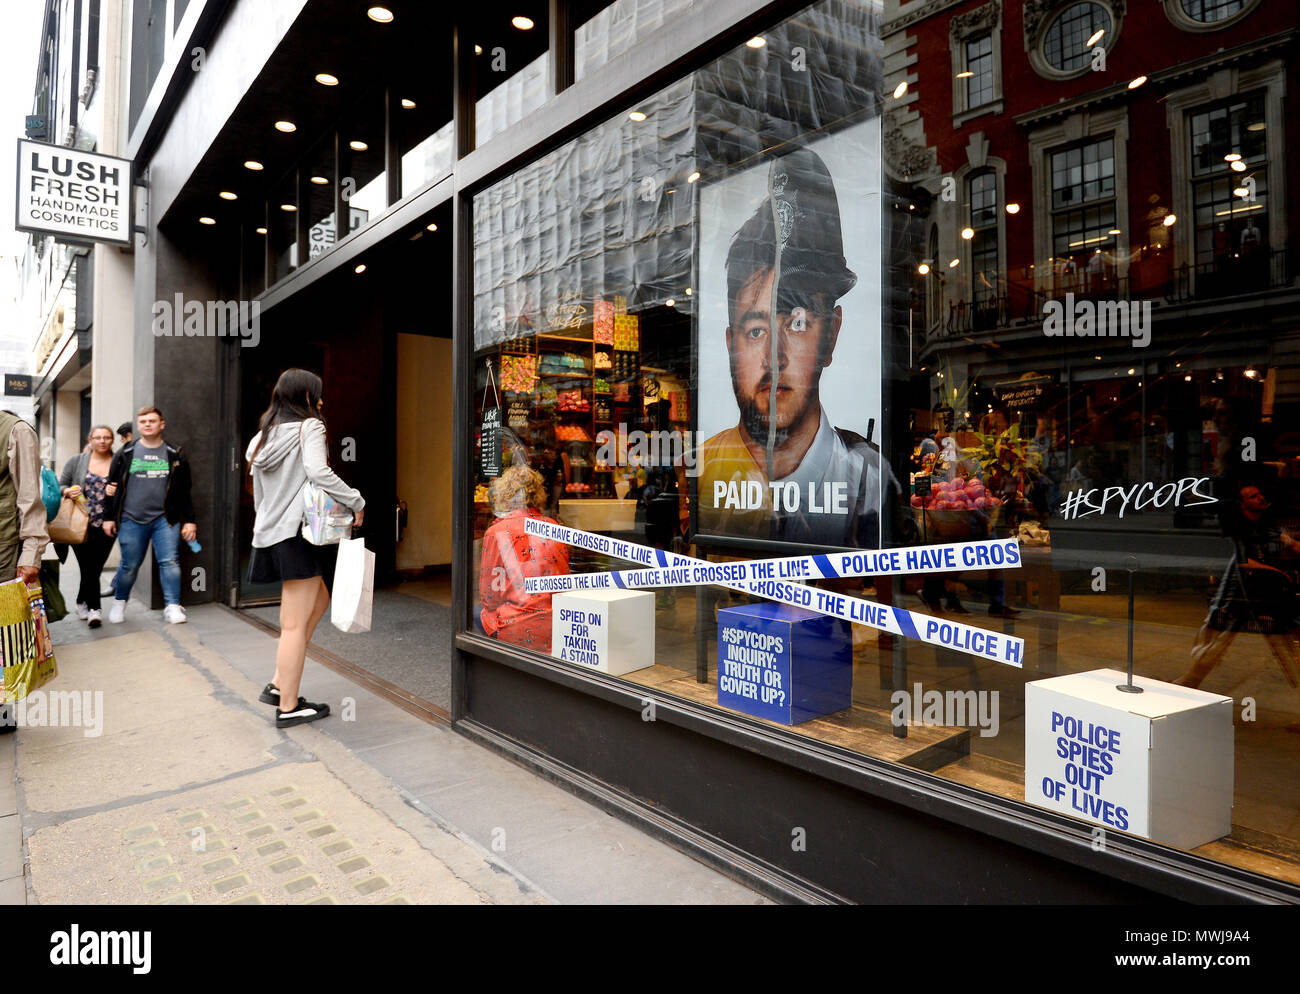 Ein Blick auf das üppige Geschäft in der Oxford Street, London, eines von über 100 Kosmetikgeschäften in der High Street, das aufgrund einer „abtrünnigen“ Kampagne, die Undercover-Polizeiarbeit kritisiert, mit Gegenreaktionen konfrontiert war. Stockfoto